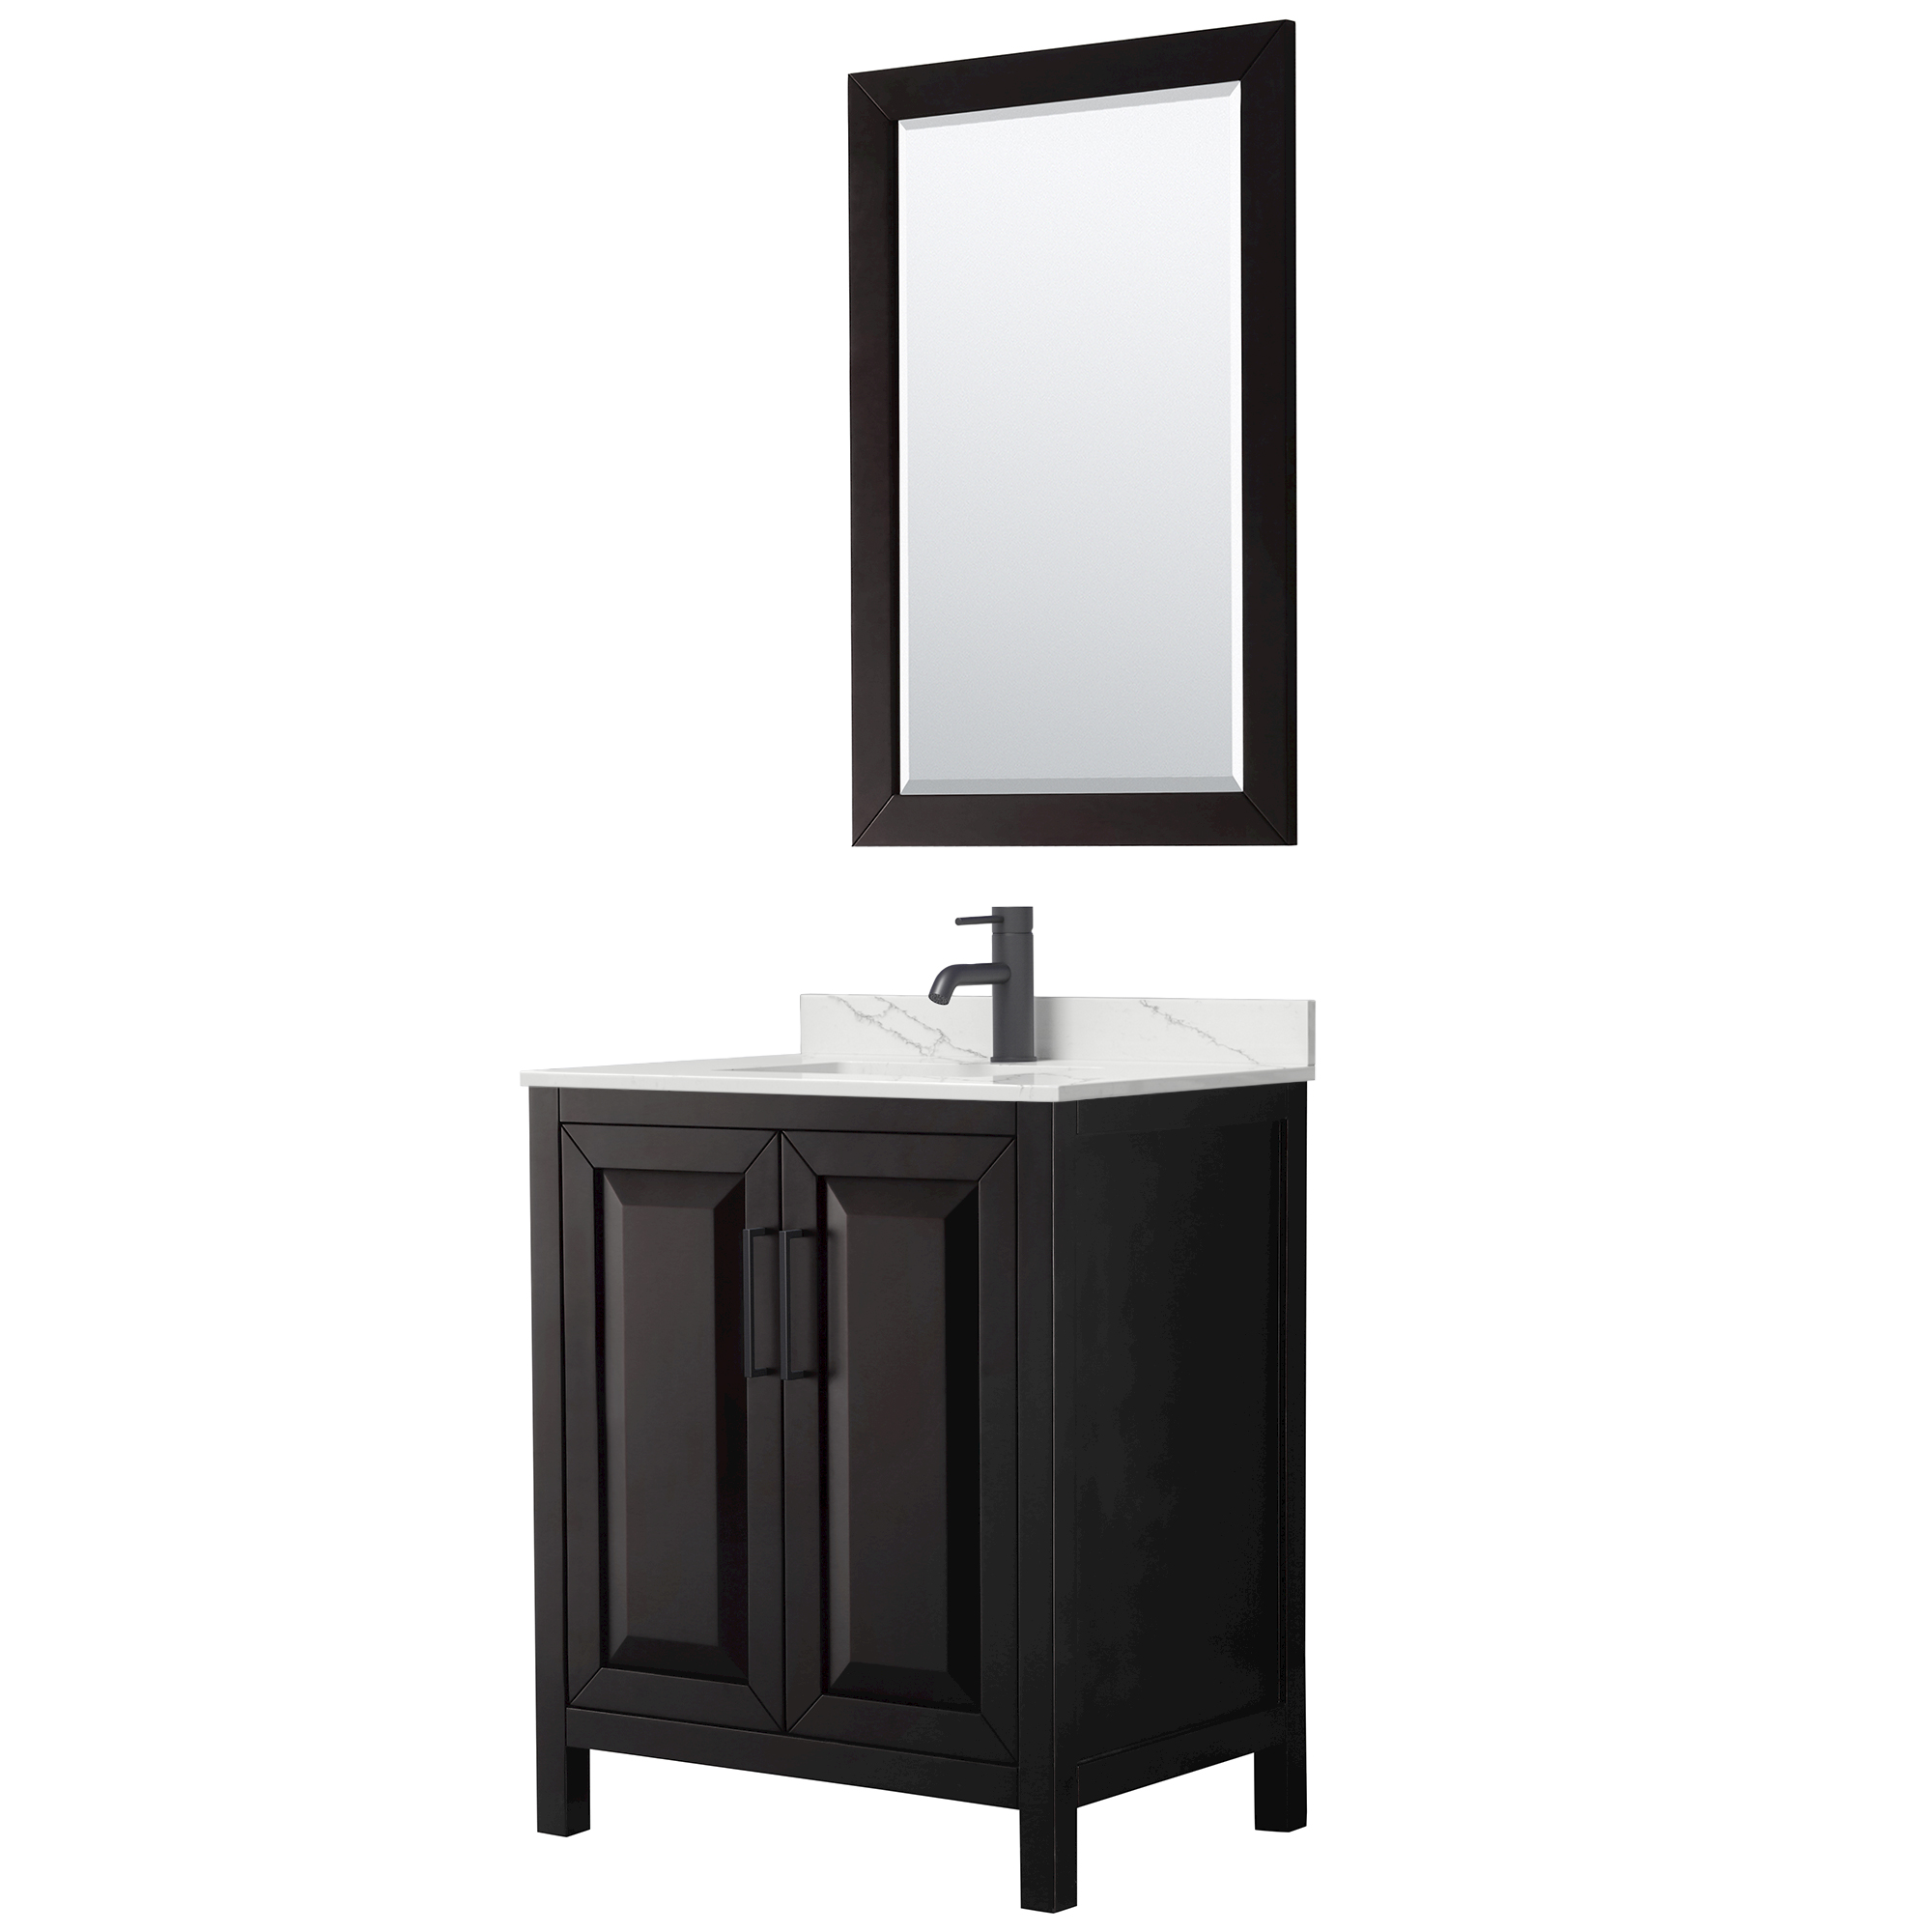 daria 30" single bathroom vanity by wyndham collection - dark espresso